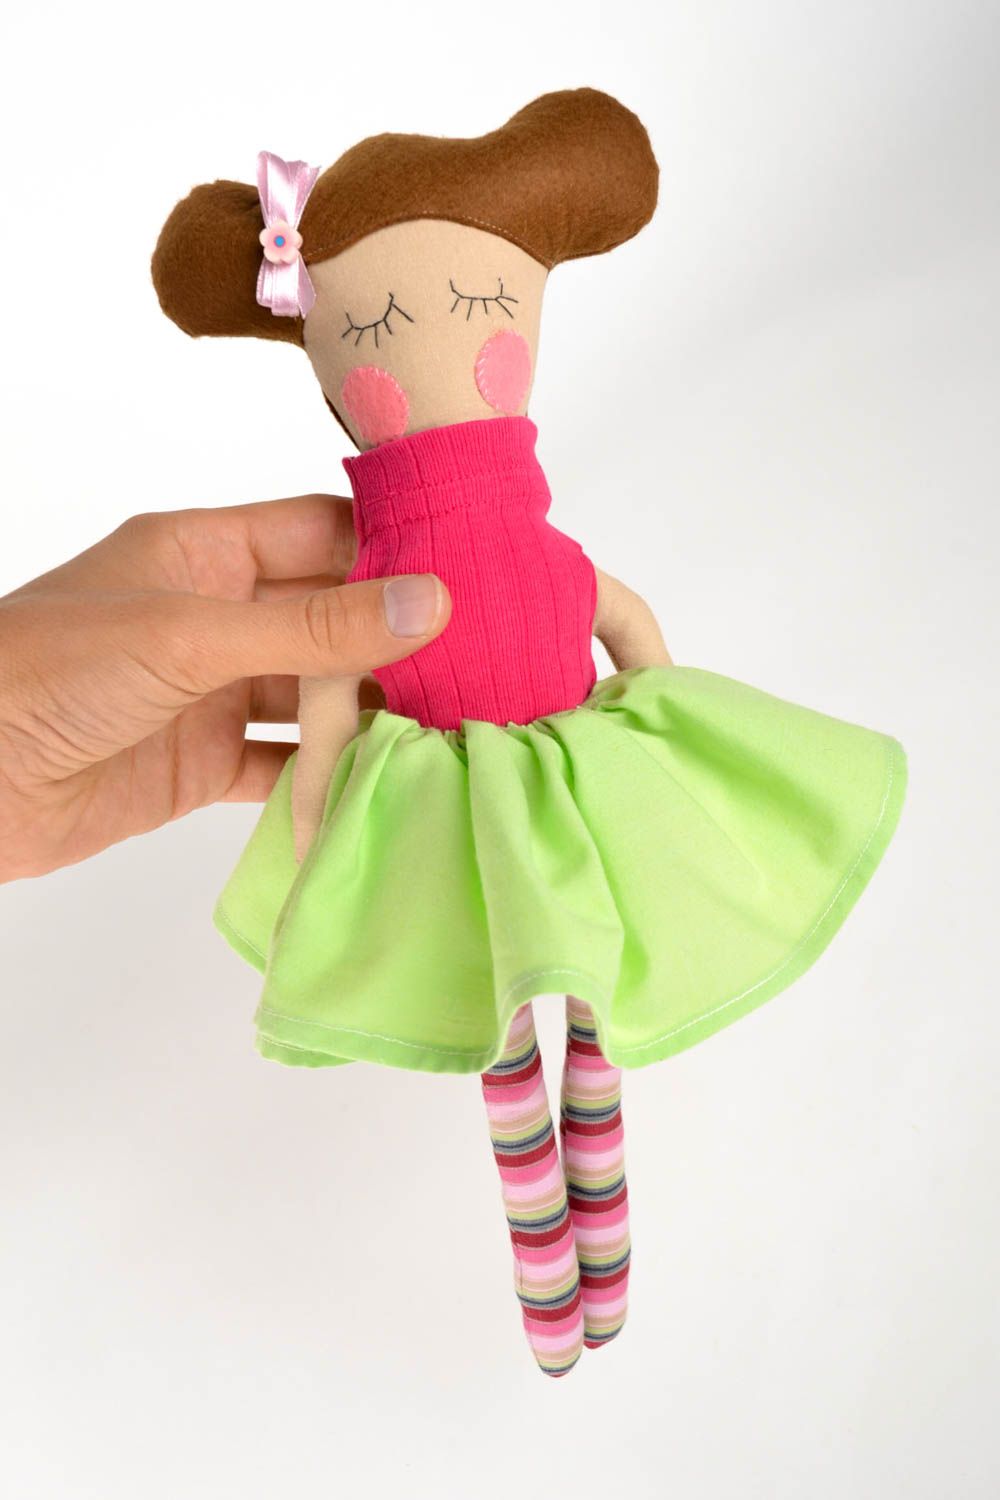 Puppe handgemacht Stoff Spielzeug Designer Puppe Spielzeug Puppe originell schön foto 2